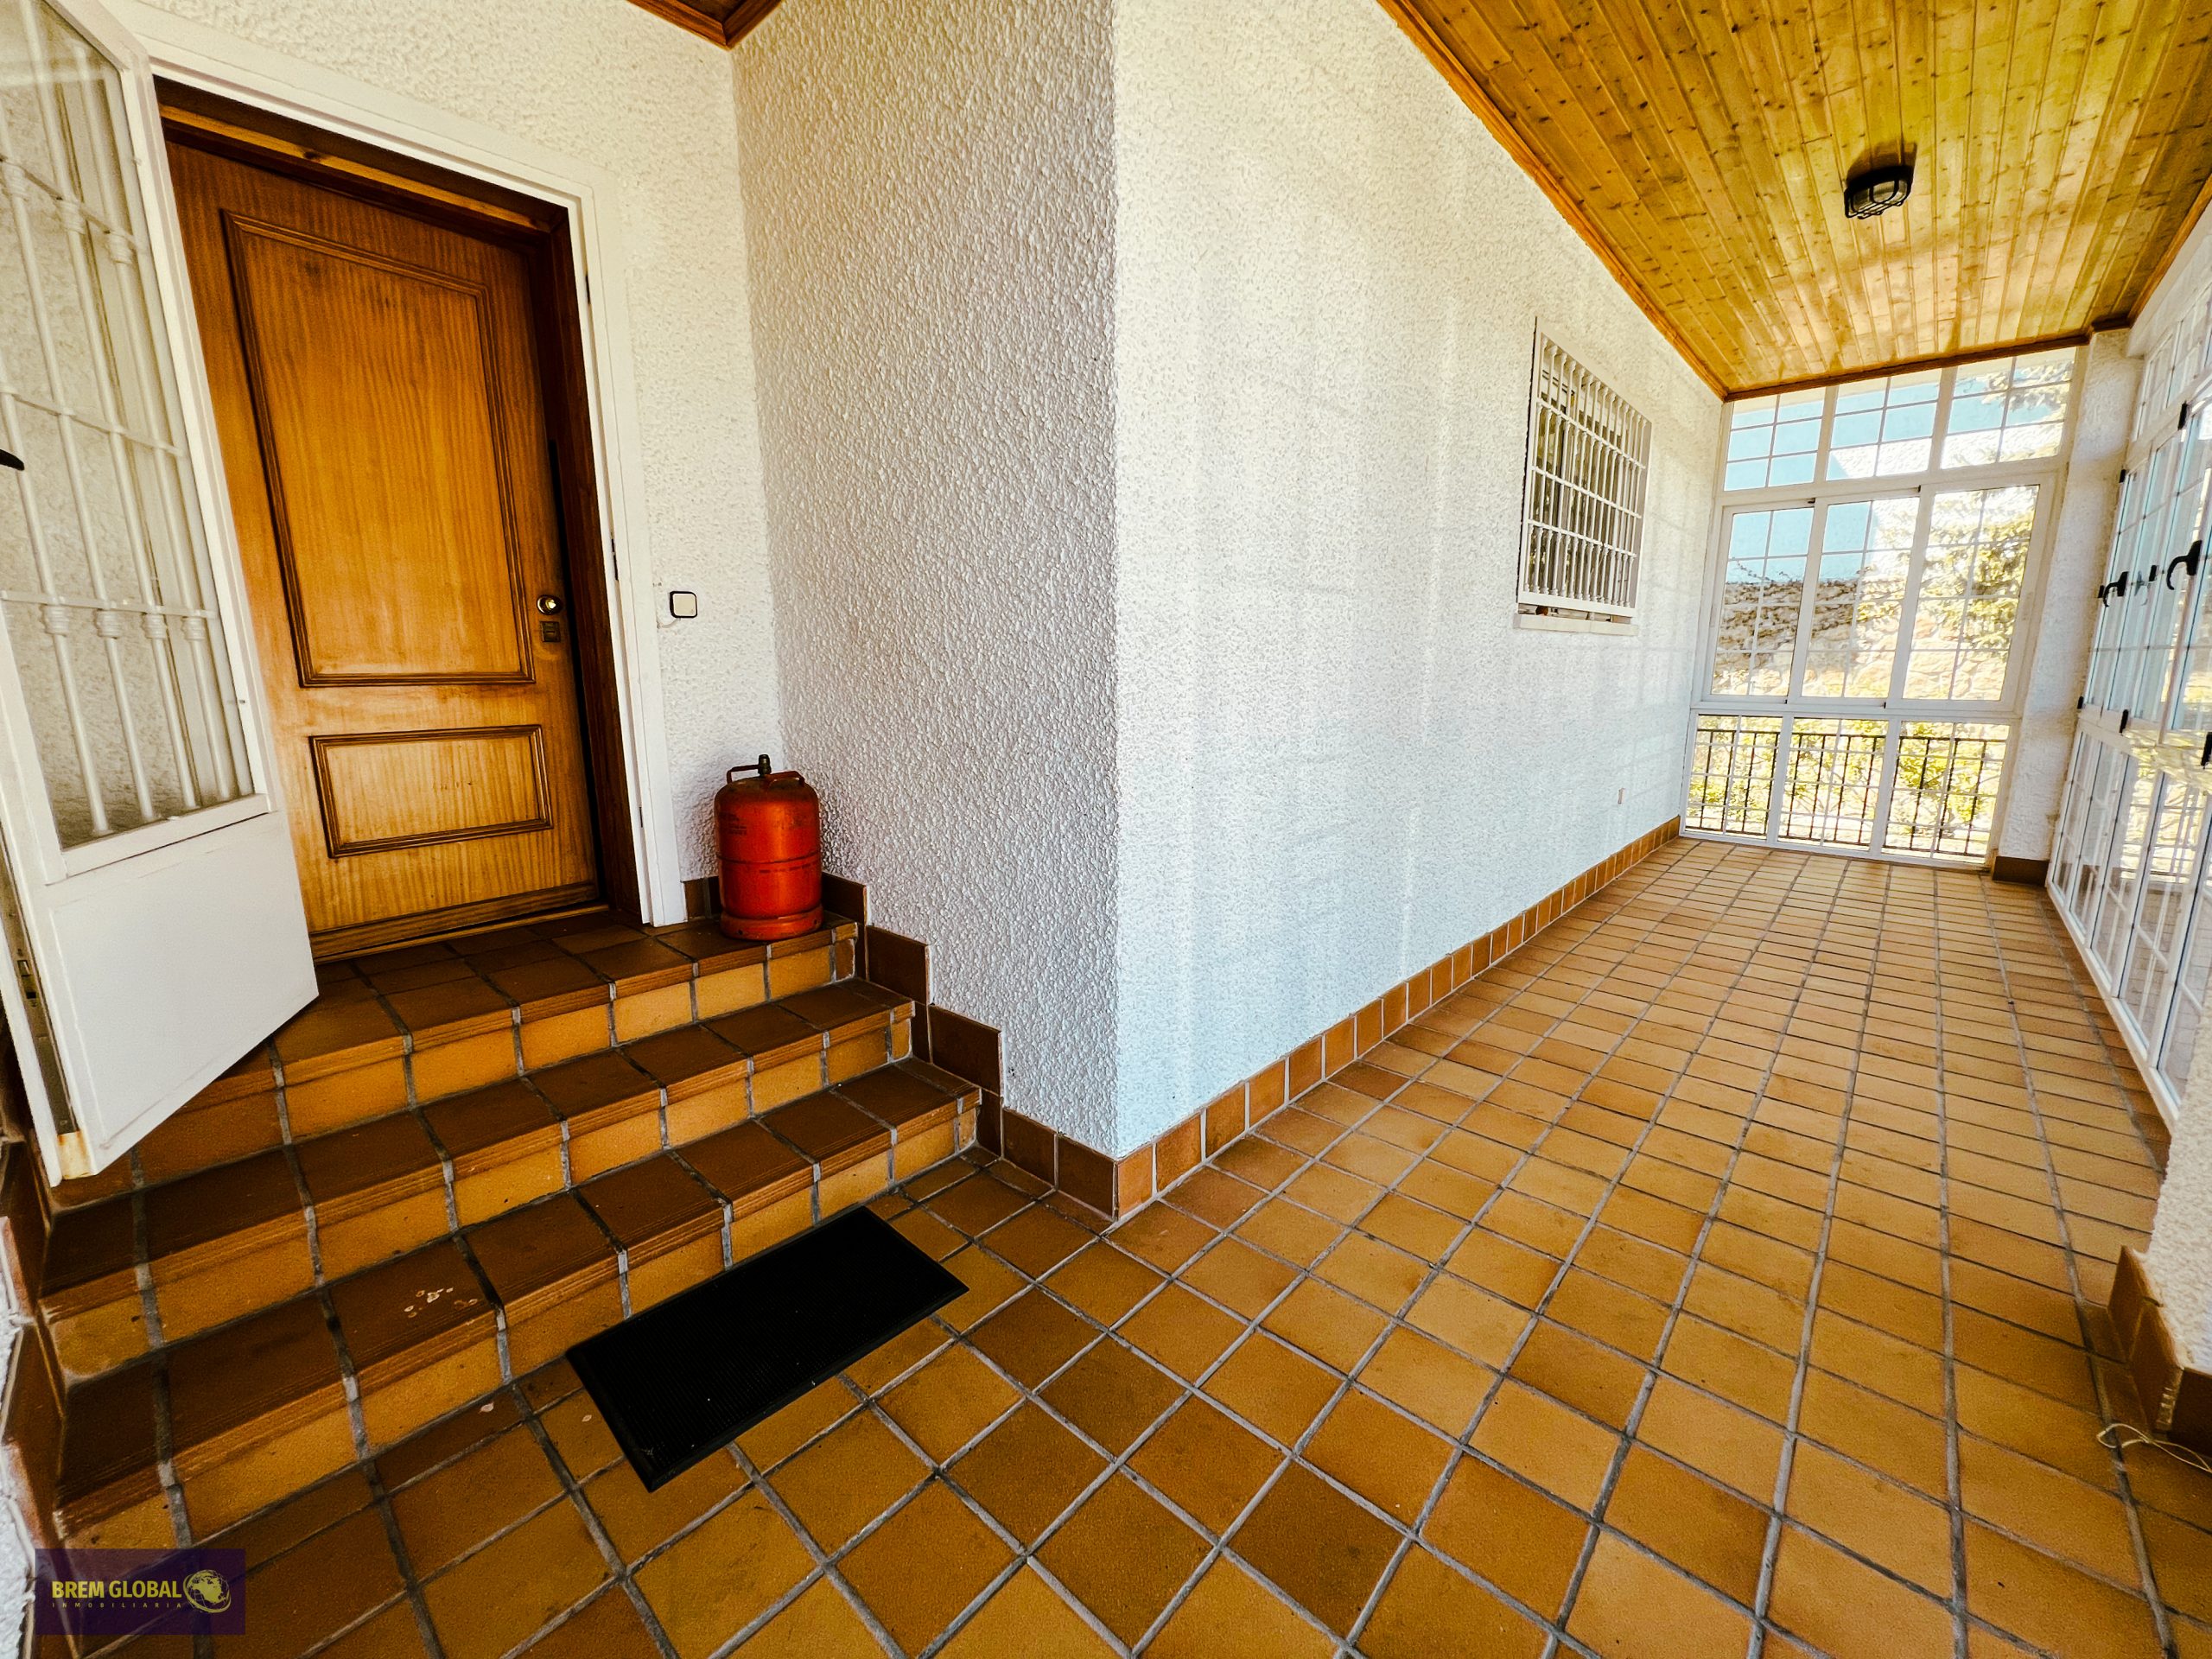 ¡BREM GLOBAL Inmobiliaria tiene el chalet pareado perfecto para ti y tu familia! En La Cabreara